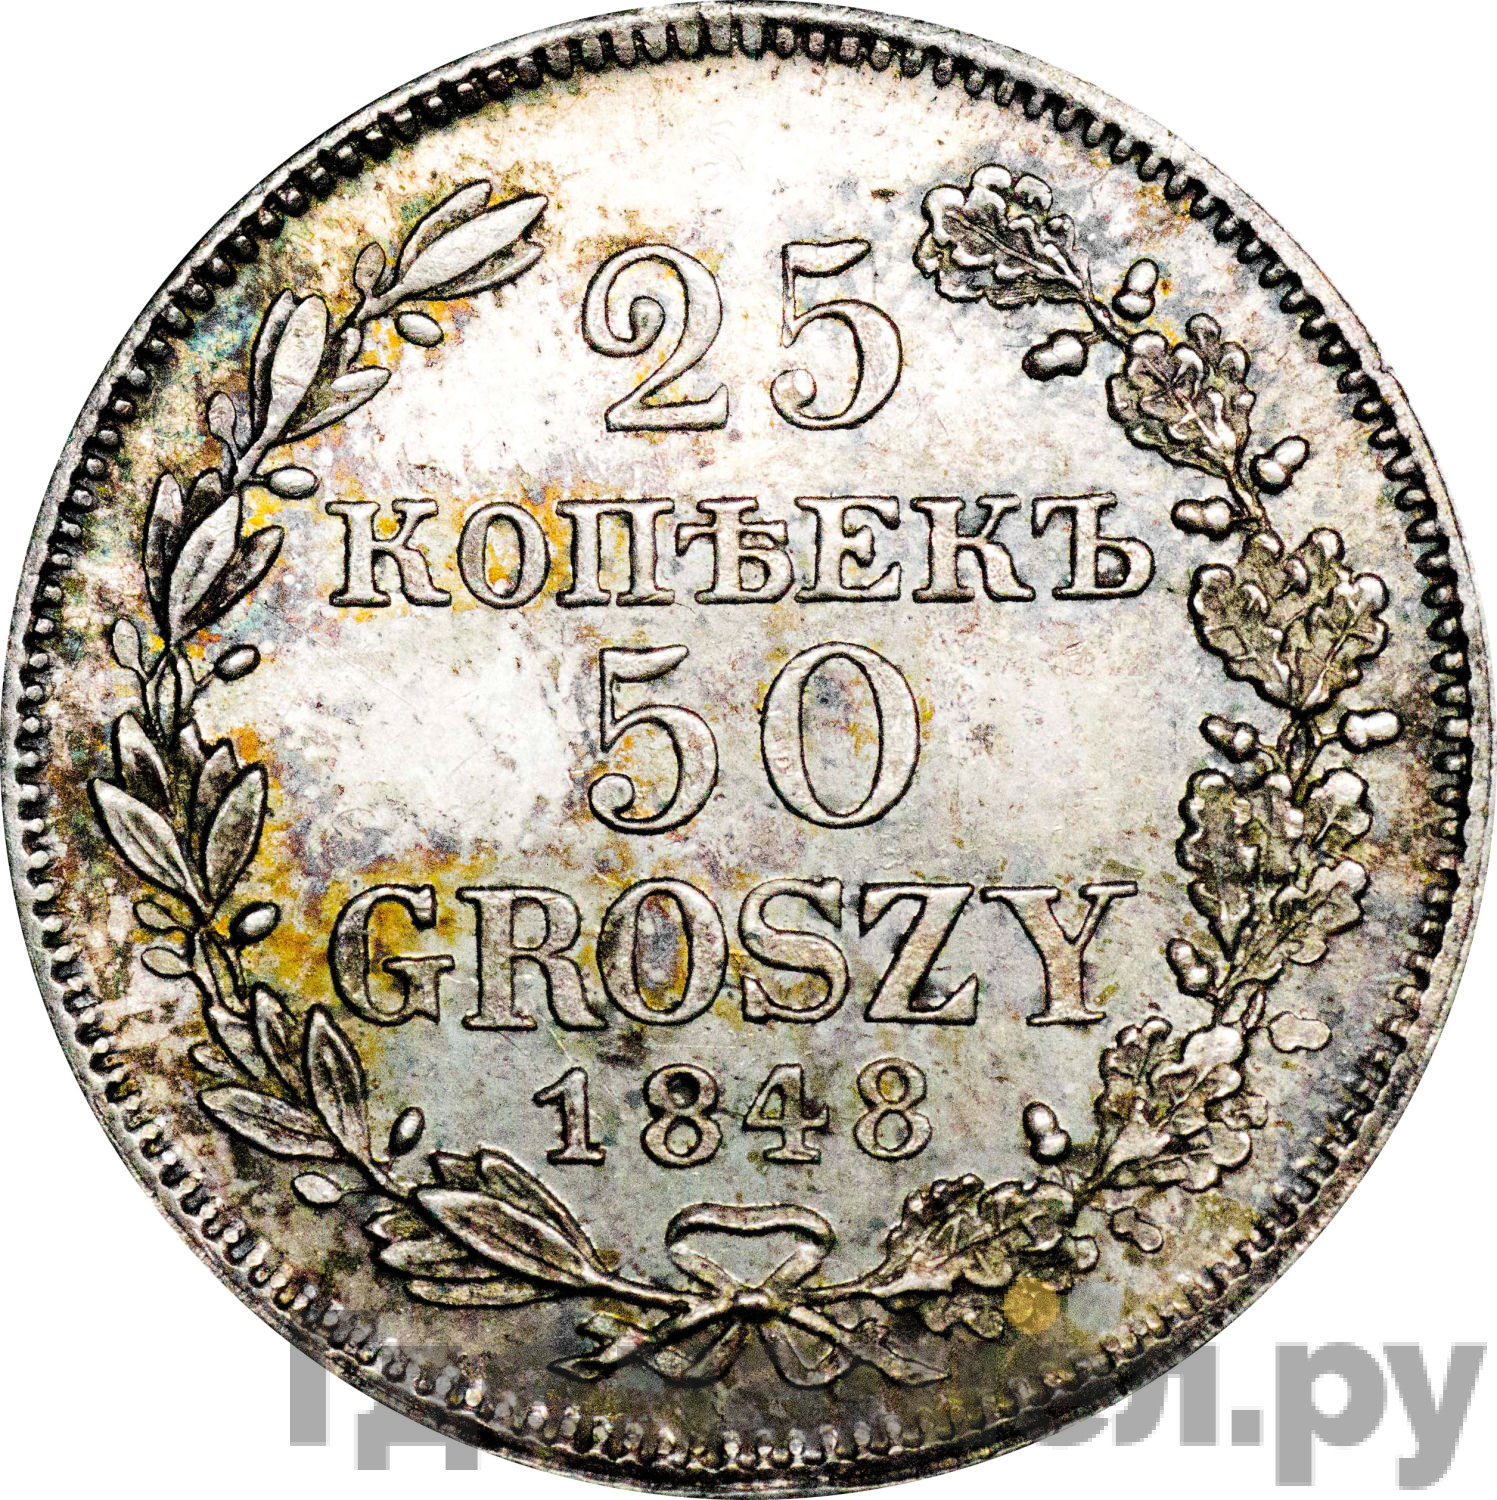 25 копеек - 50 грошей 1848 года МW Русско-Польские